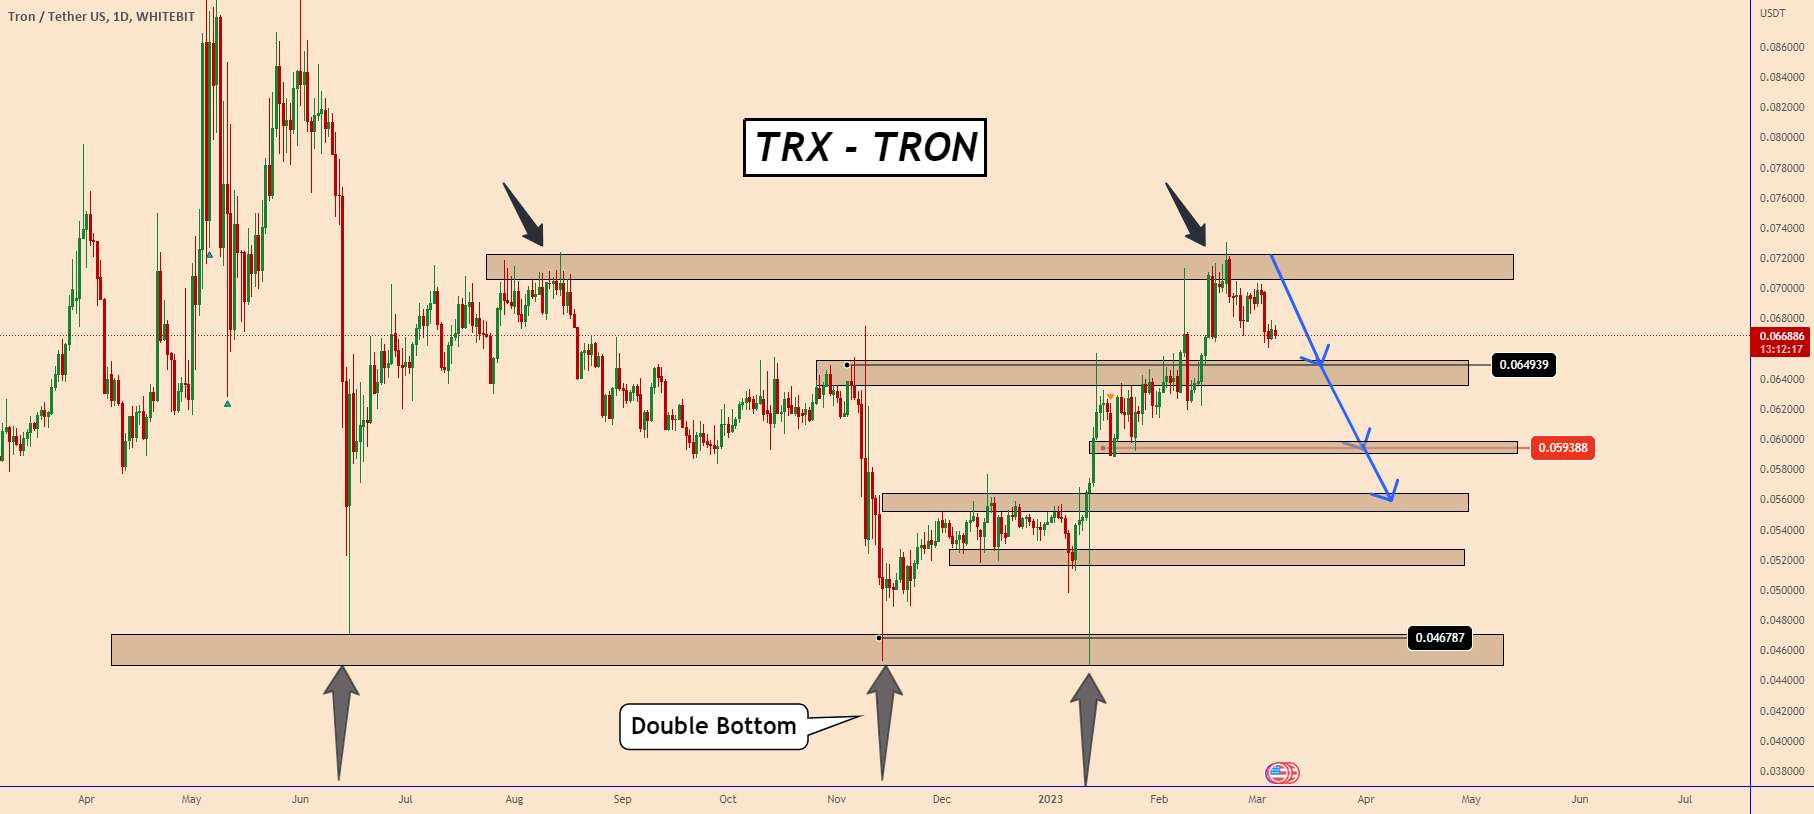  تحلیل ترون - TRON (TRX): قیمت طبق انتظار در حال توسعه است